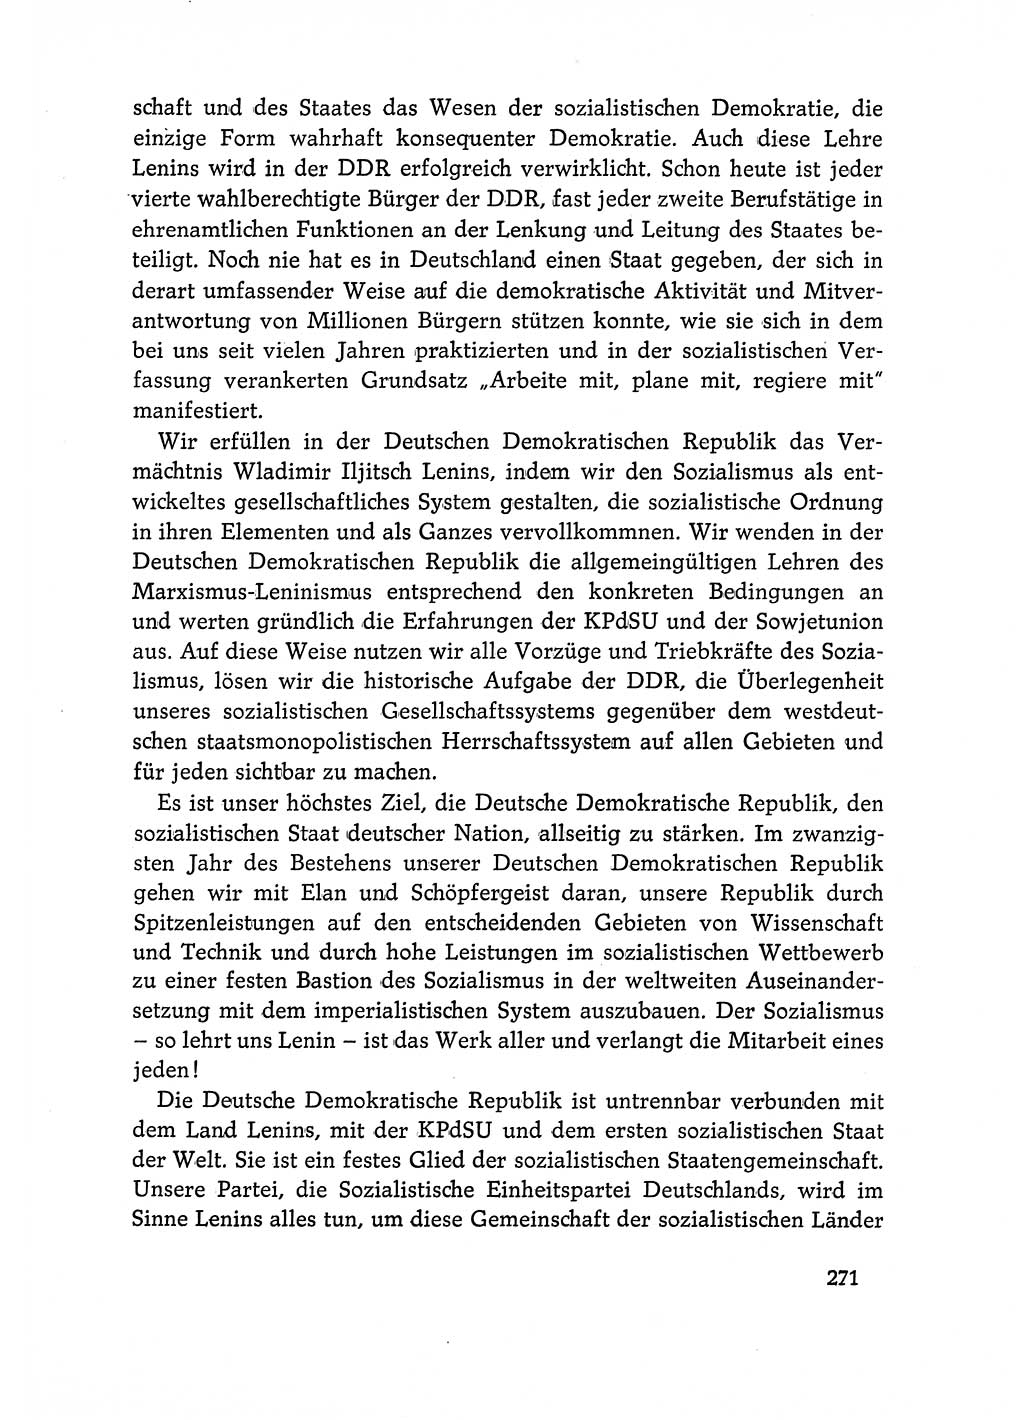 Dokumente der Sozialistischen Einheitspartei Deutschlands (SED) [Deutsche Demokratische Republik (DDR)] 1968-1969, Seite 271 (Dok. SED DDR 1968-1969, S. 271)